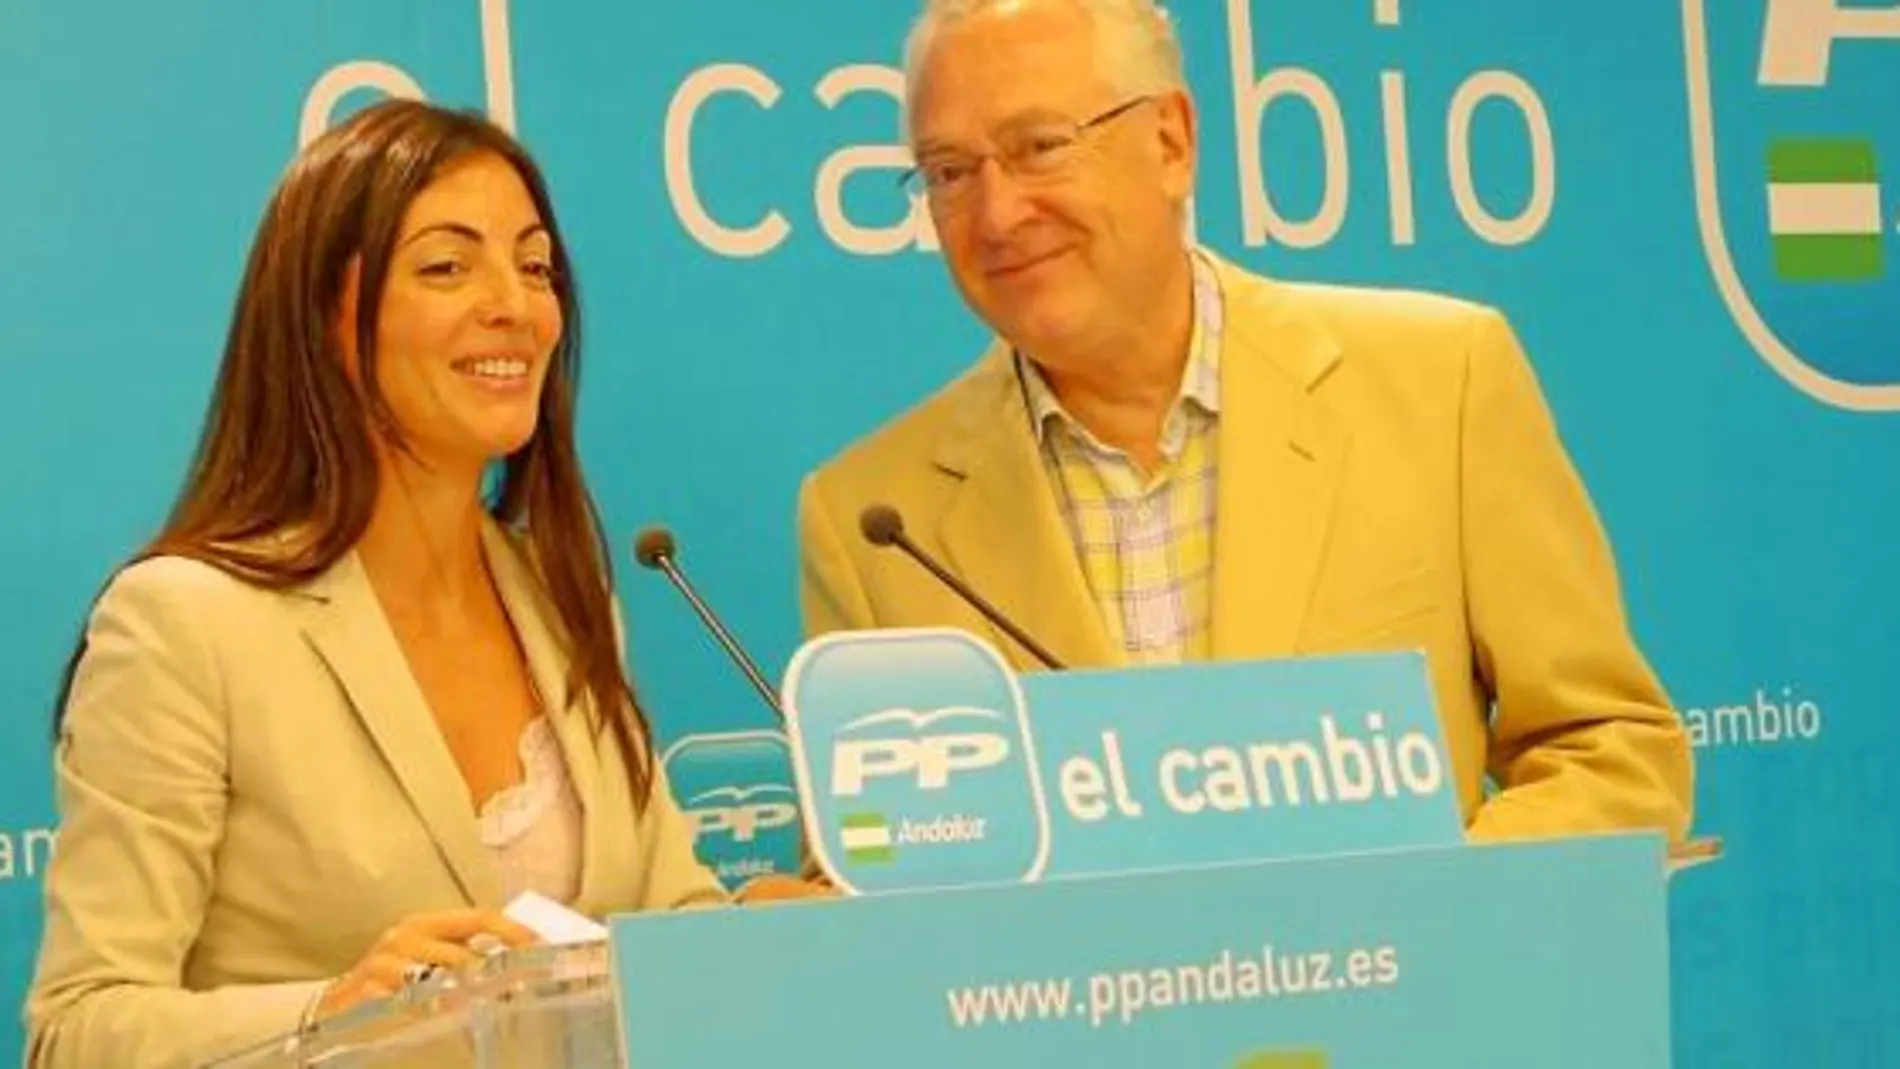 La portavoz del PP andaluz, Rosario Soto, junto al parlamentario Jaime Raynaud, en la sede regional de la formación en Sevilla